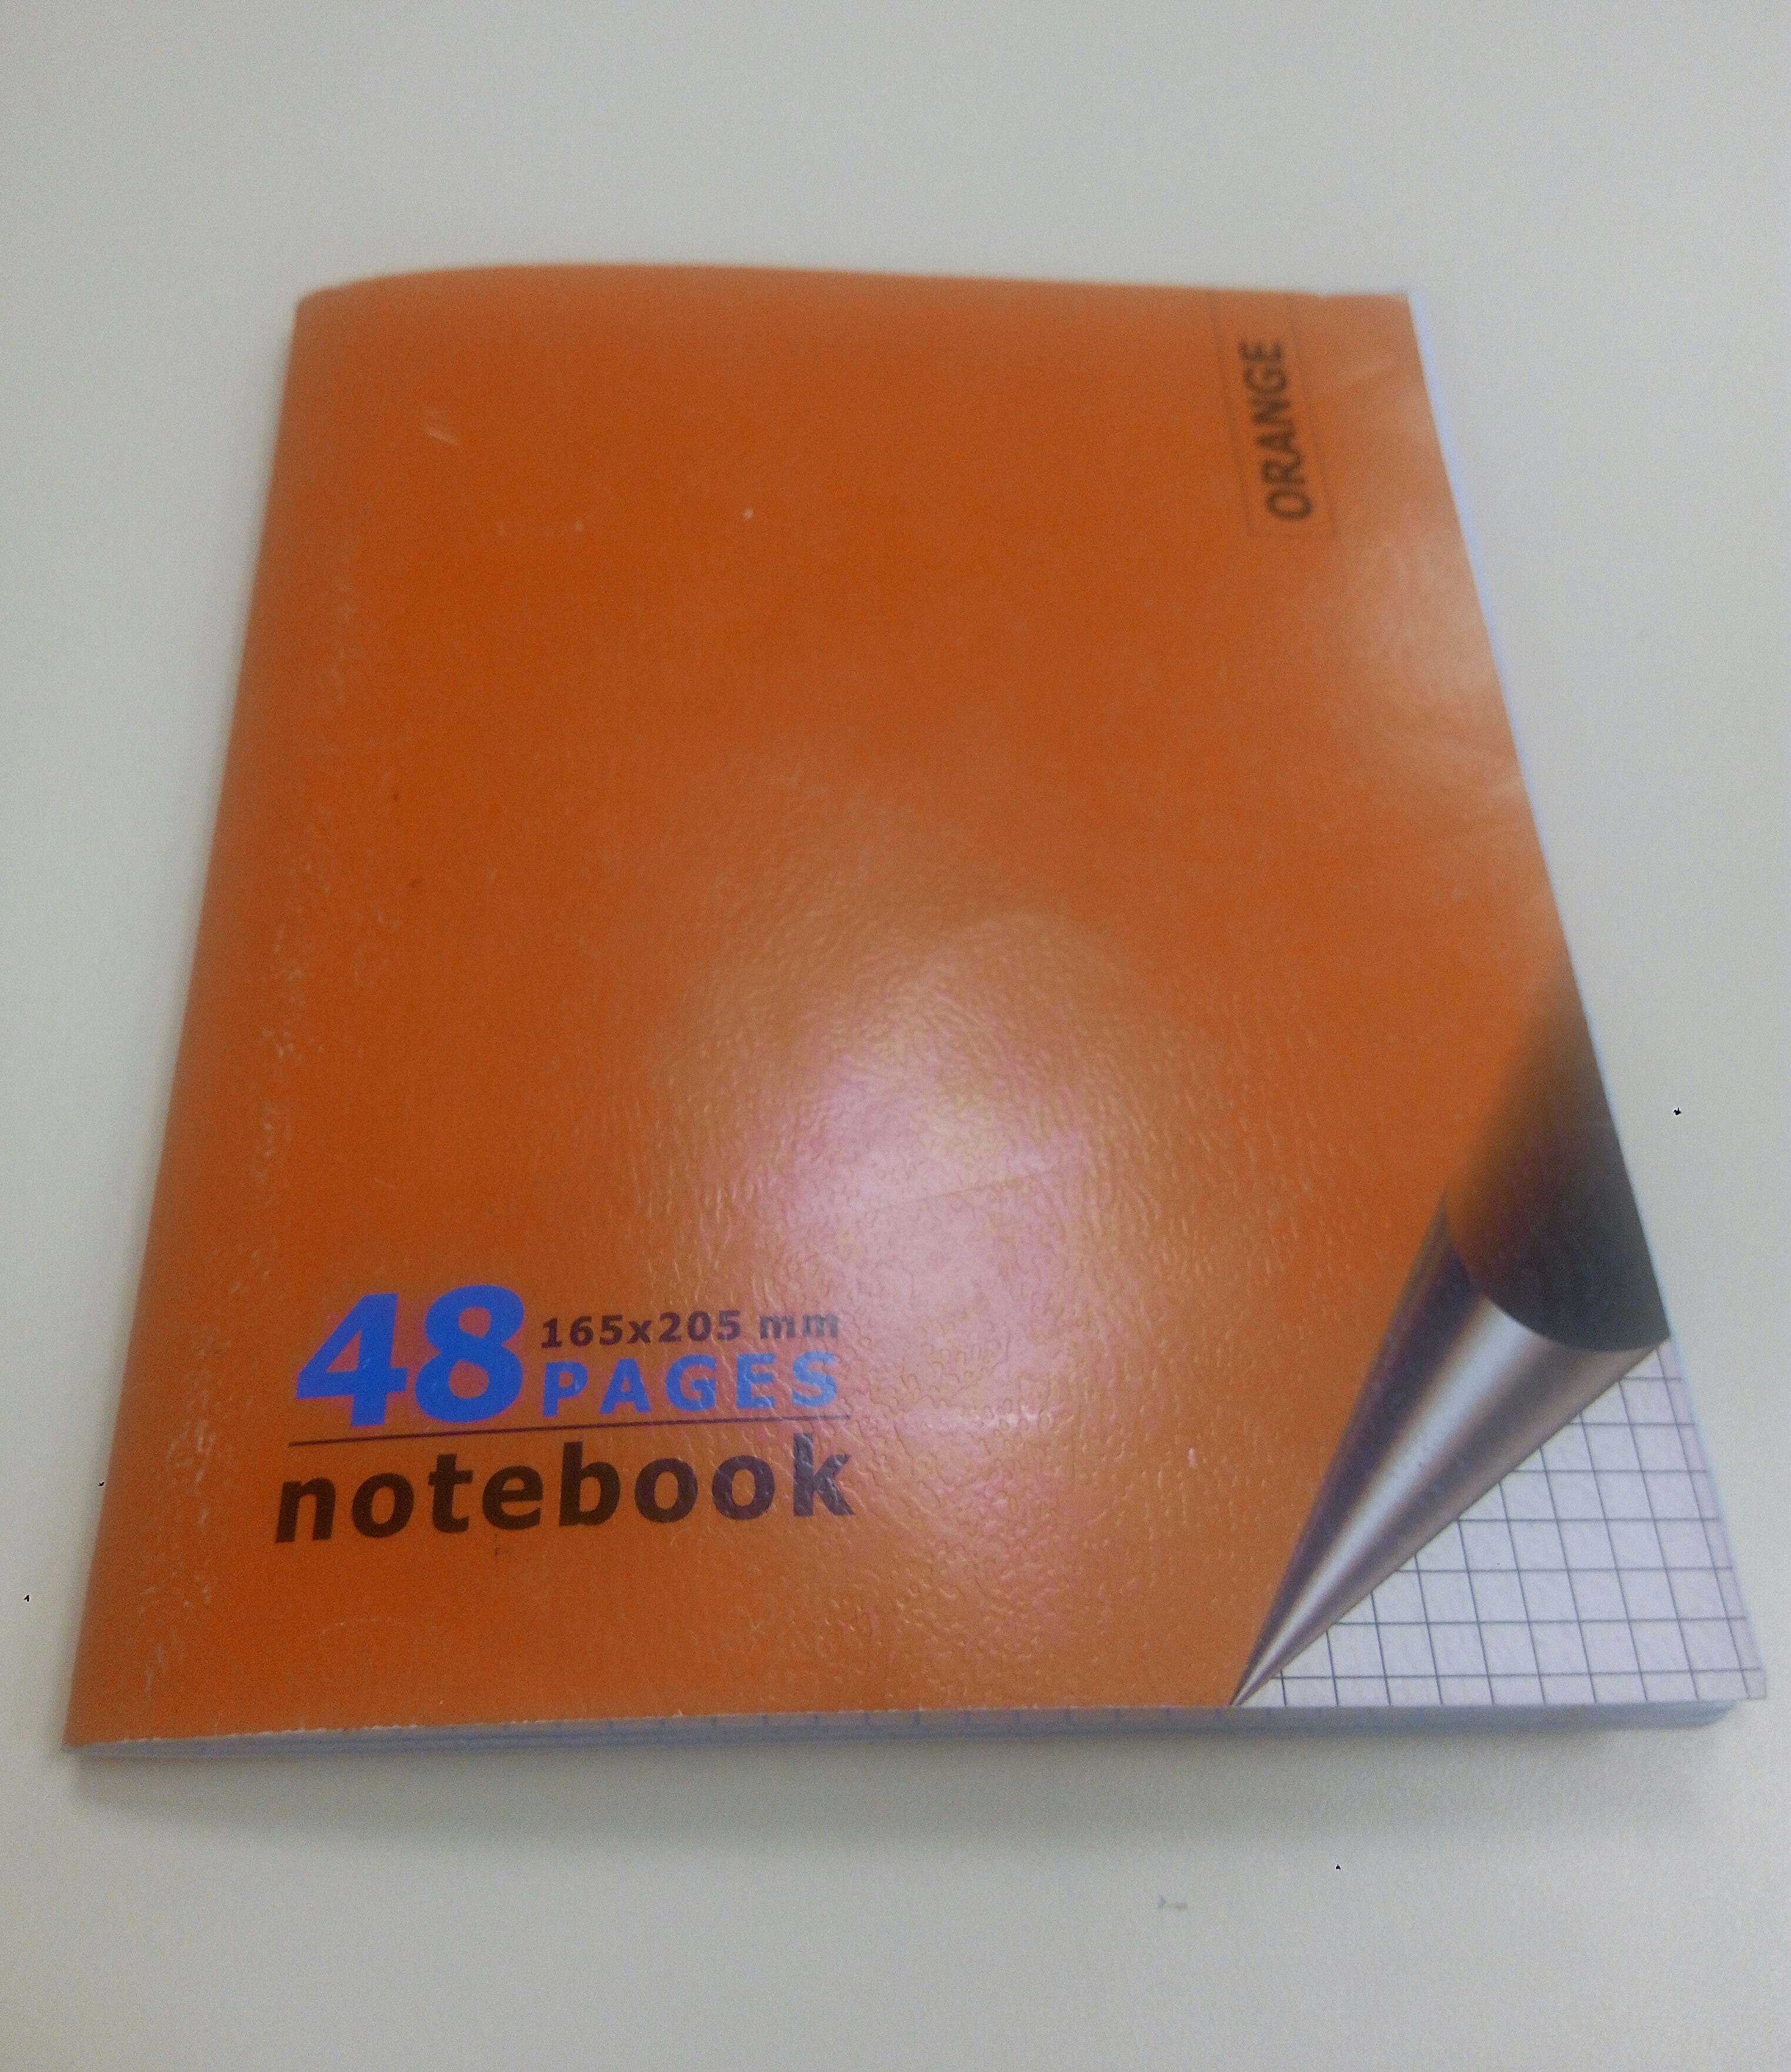 notebook - Product - en